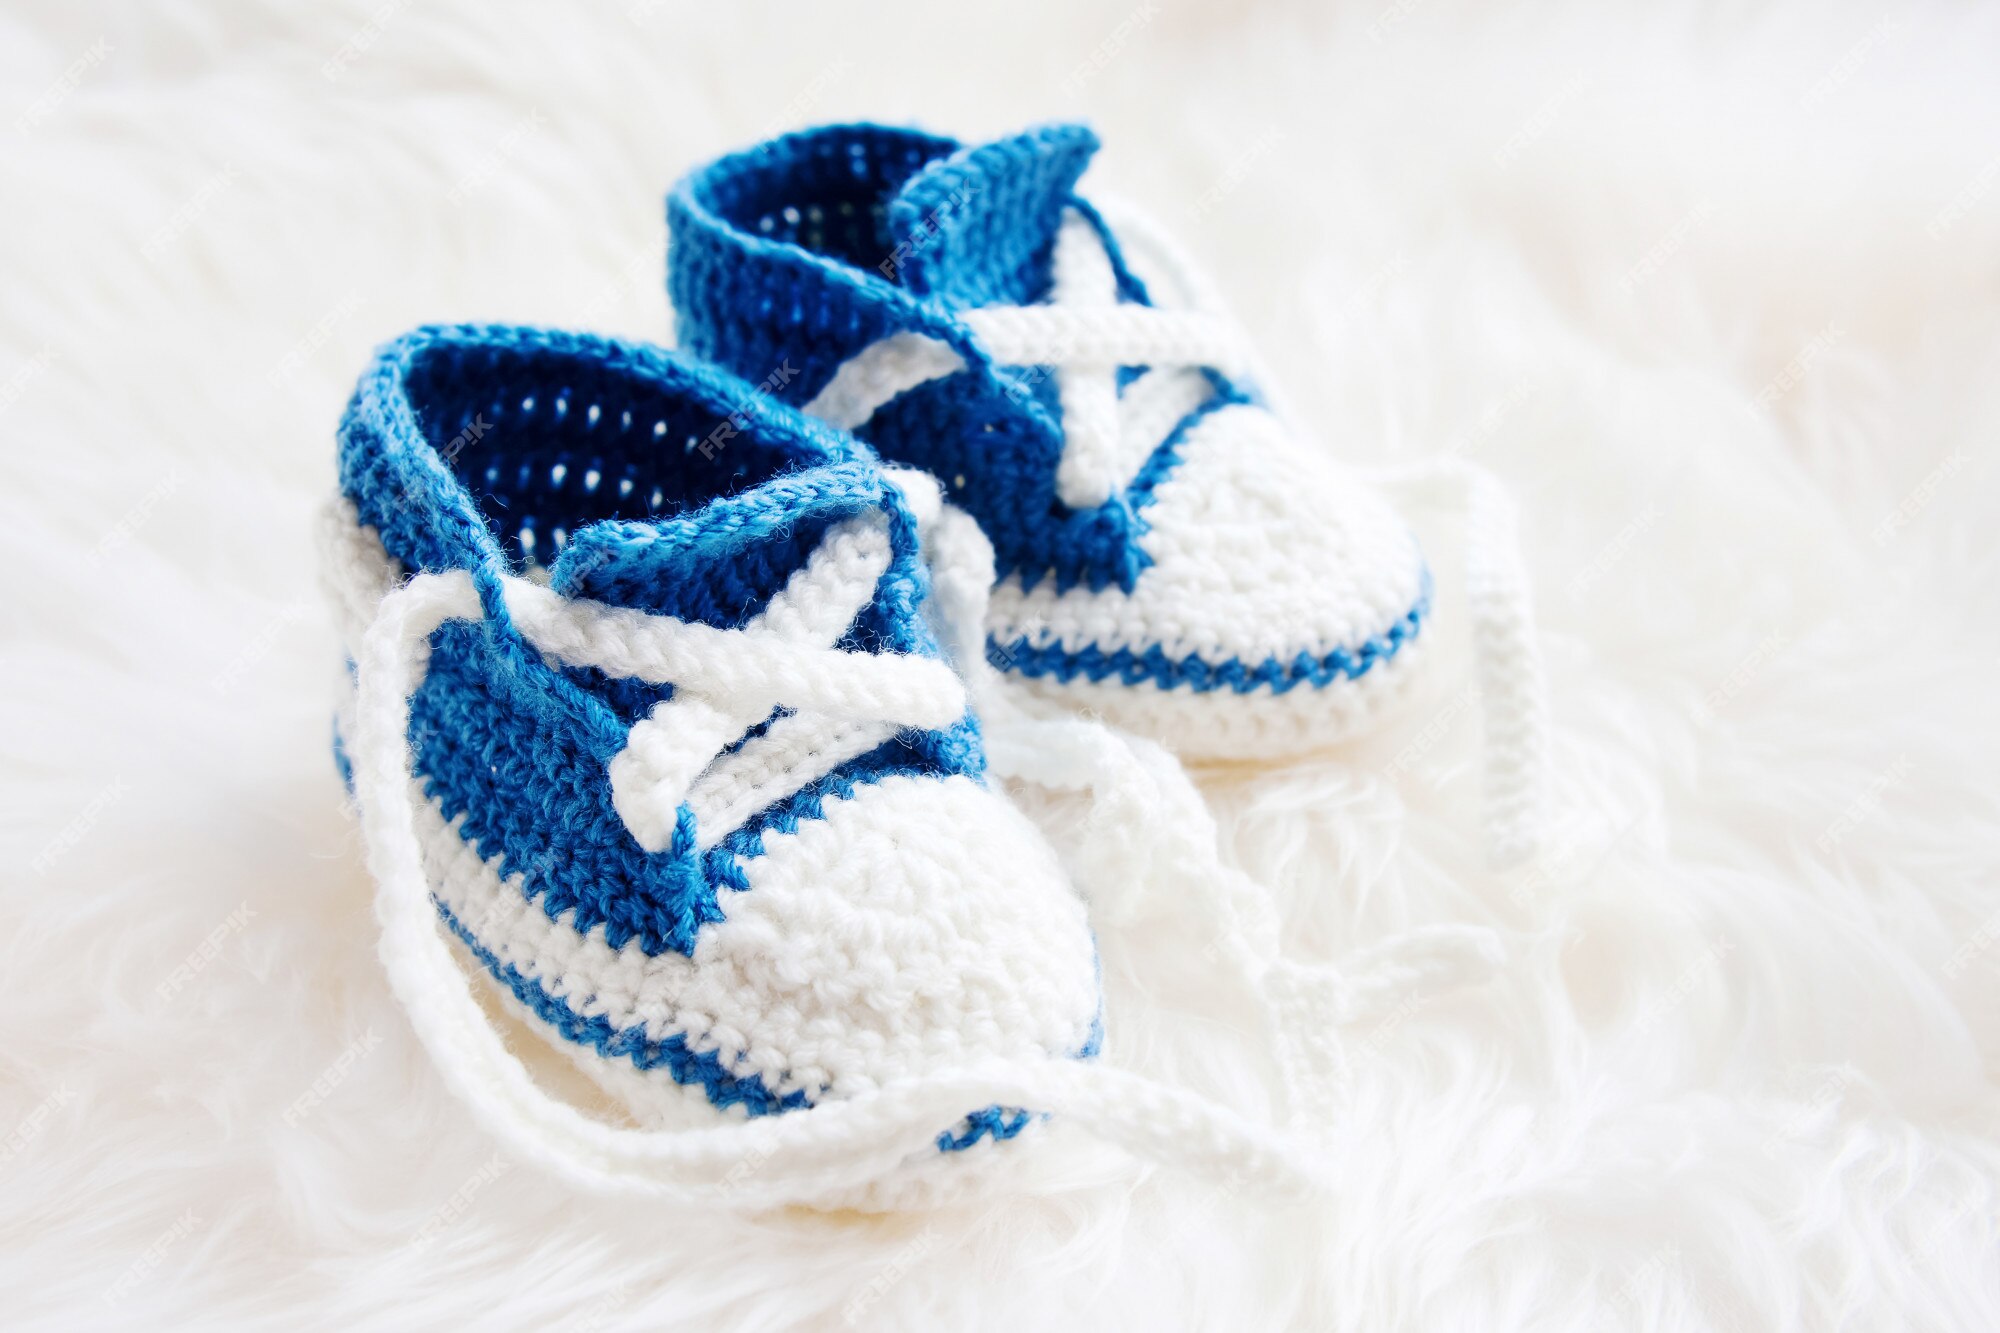 Señuelo Facilitar Honestidad Zapatitos de bebé. zapatillas primeras tejidas a mano para niño o niña  recién nacida. patucos de ganchillo hechos a mano. | Foto Premium